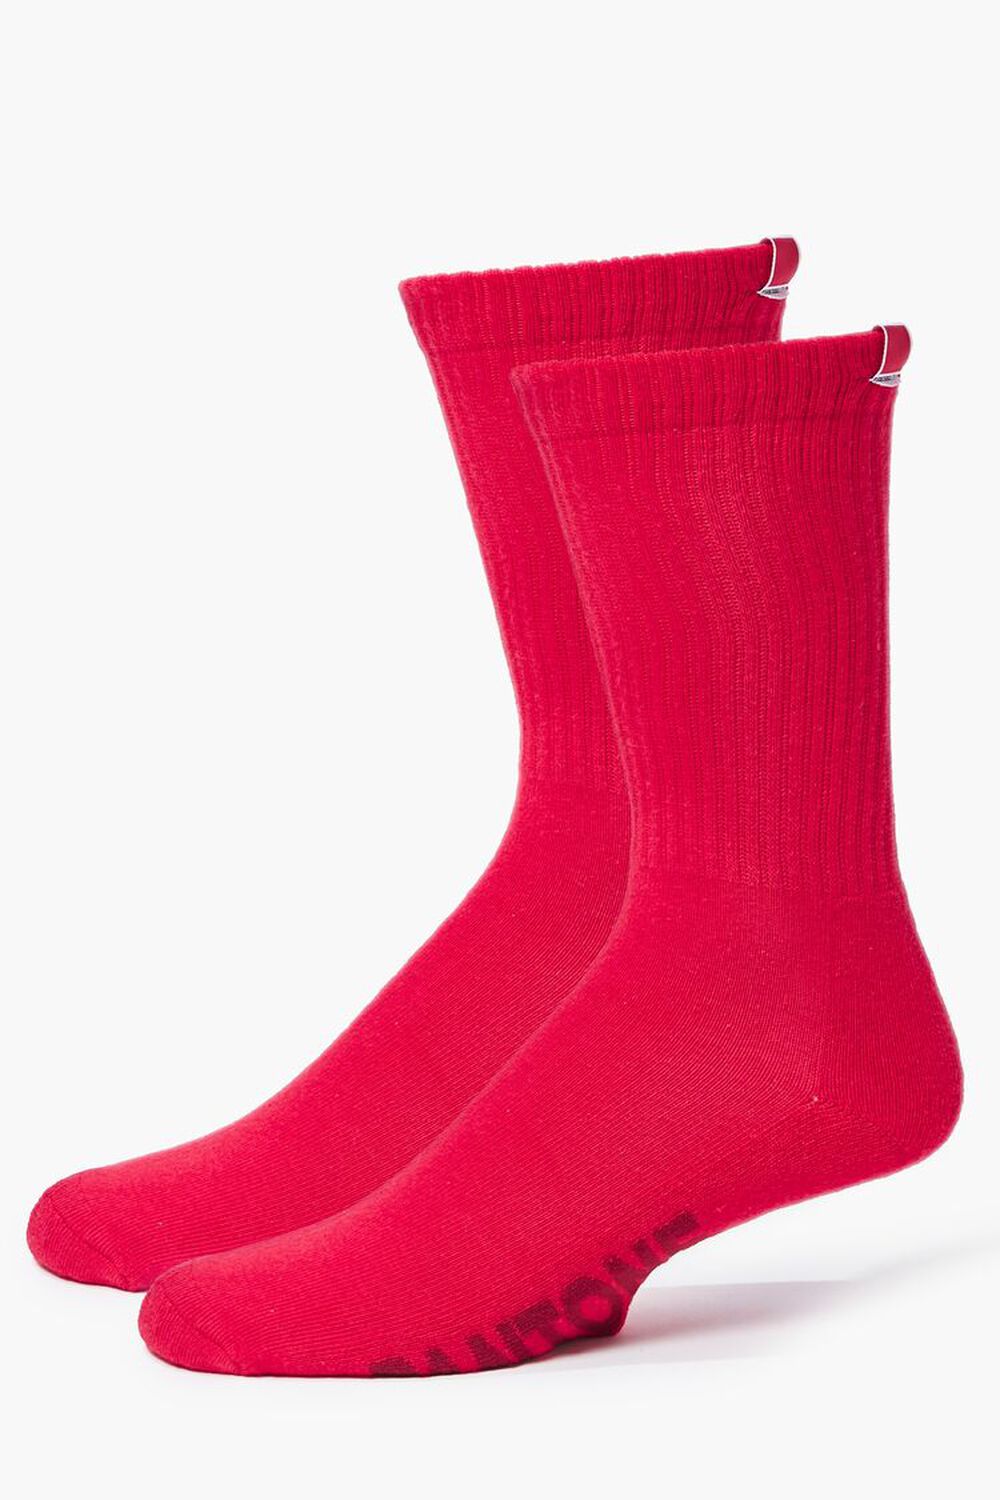 RED Men Pantone Crew Socks, image 1